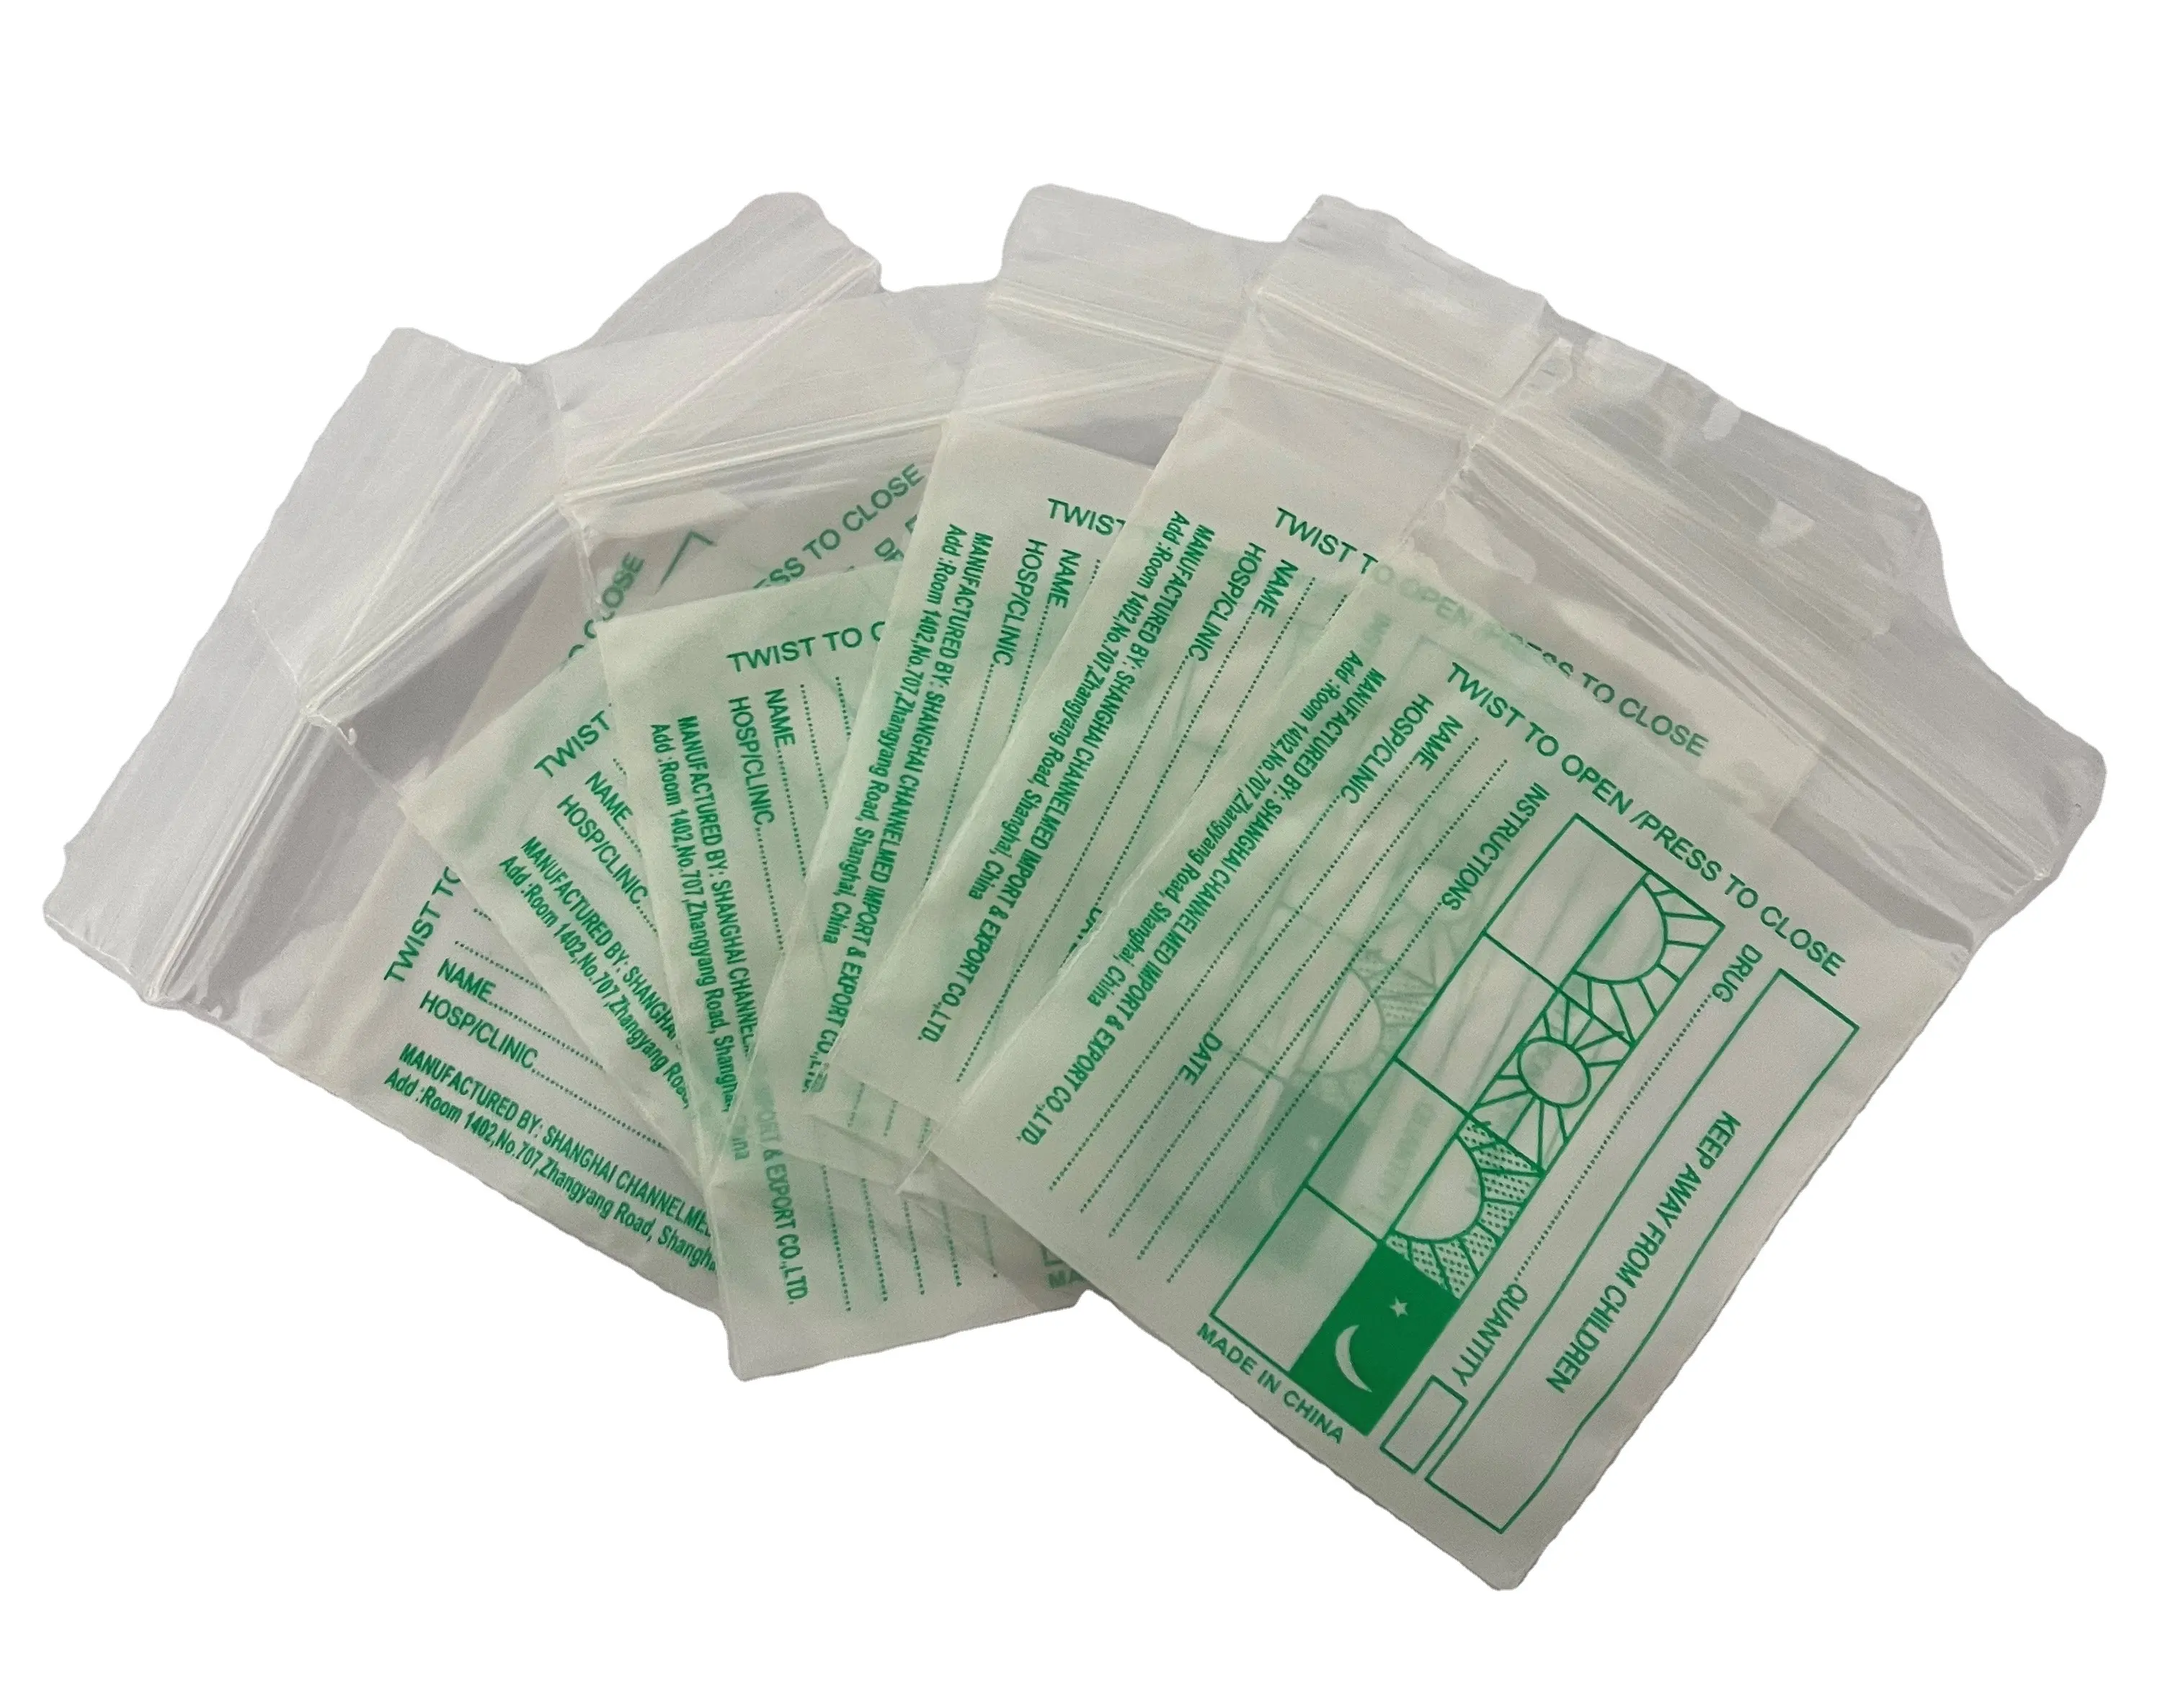 Ldpe bedruckte Pille Medizin beutel Abgabe Umschlag Verpackung Drug Tablet Dispens ing Bags